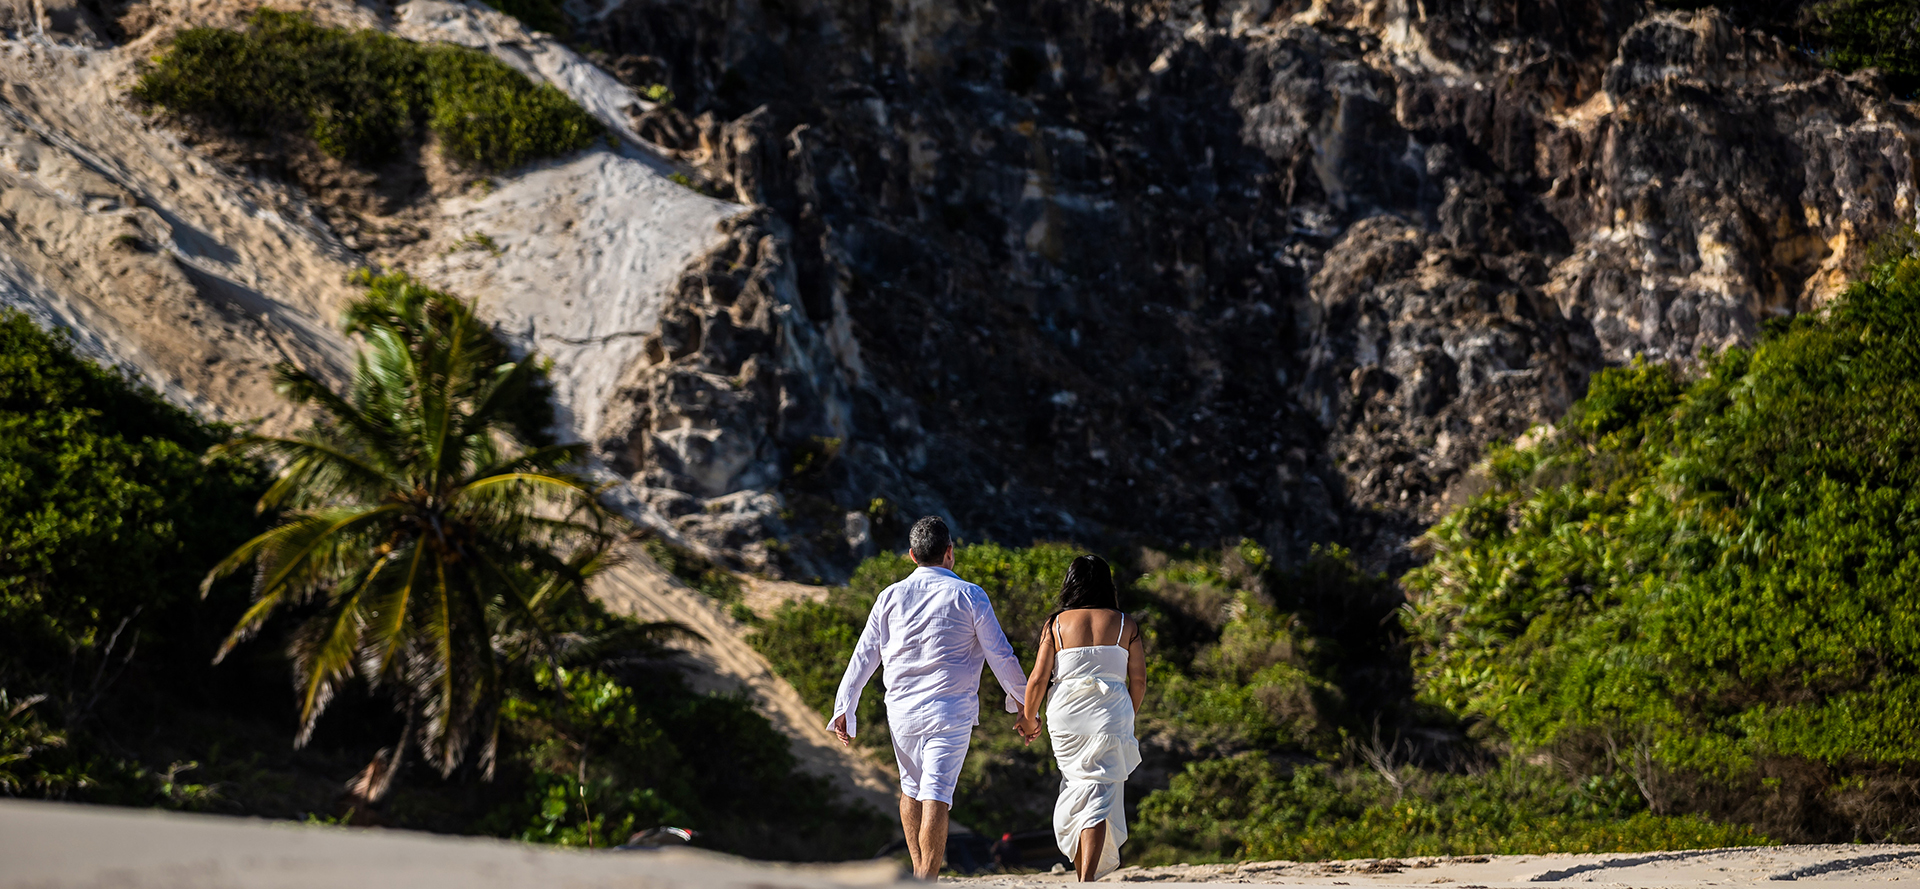 Casal samoano num encontro a caminhar ao longo da praia.